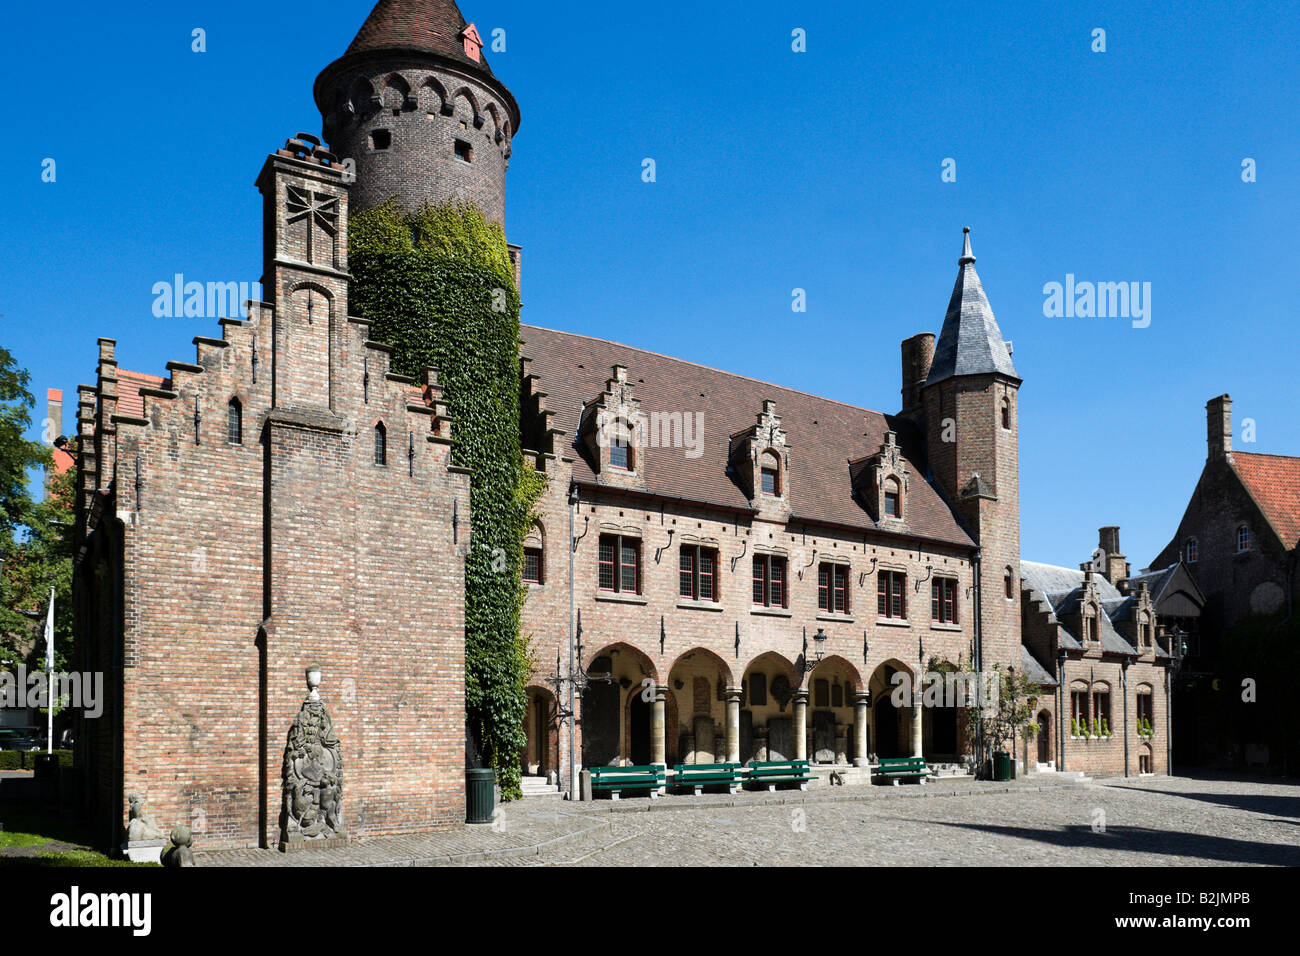 Teil des Gruuthuse Museums im Zentrum der Altstadt, Brügge, Belgien Stockfoto